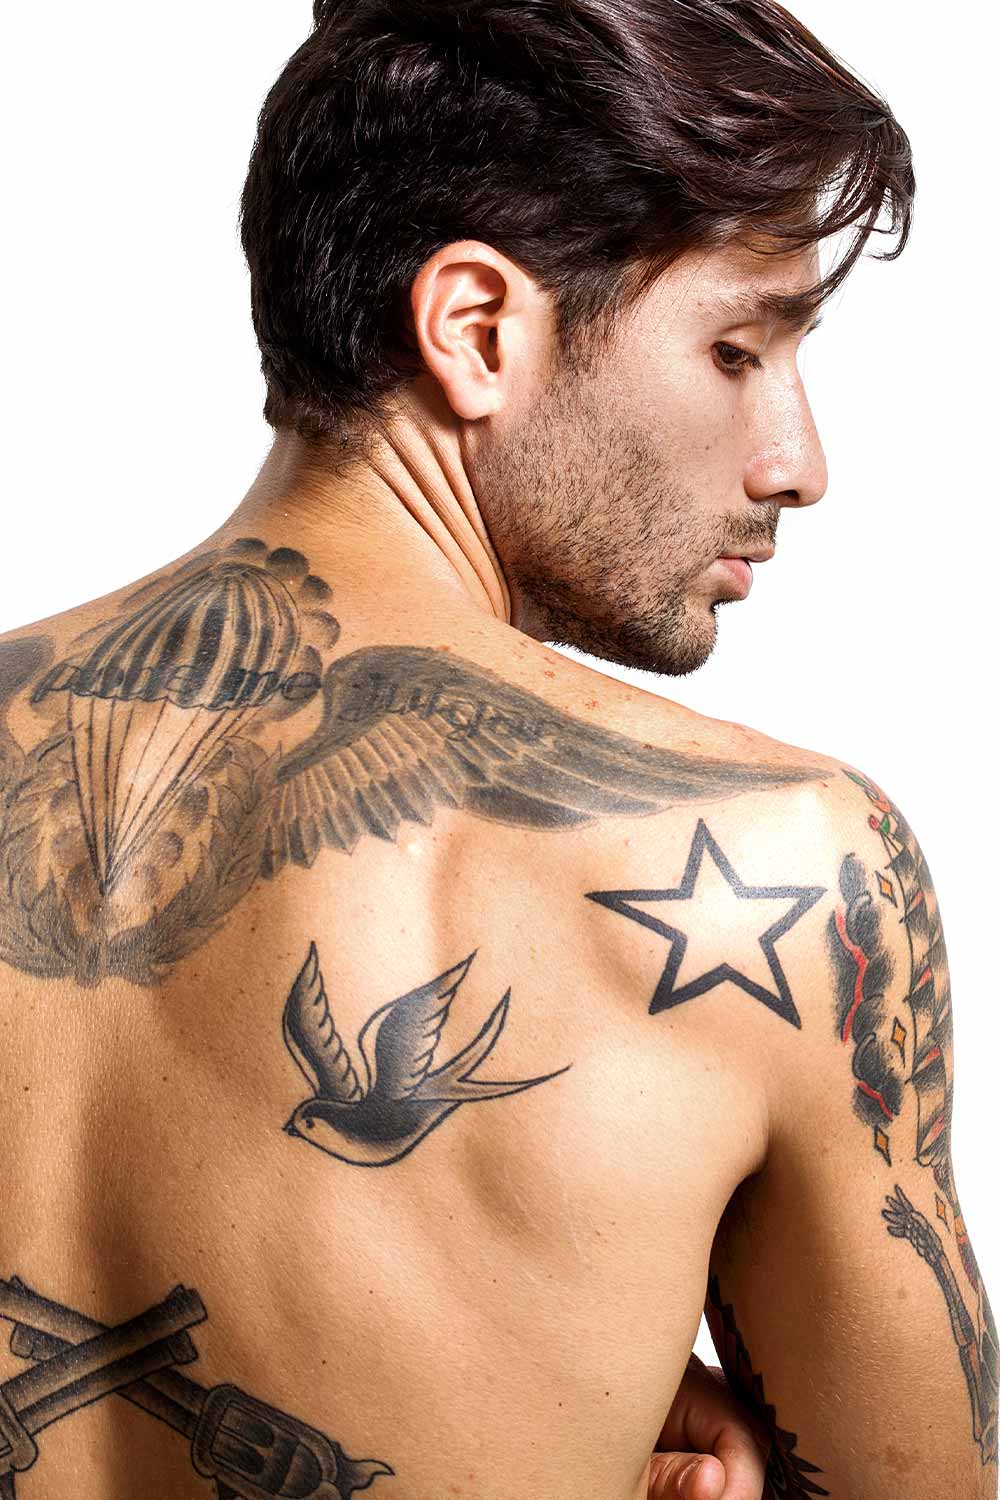 Star Tattoo #tattoosformrn #menstattoos #tattoideas #tattoo #tattoos